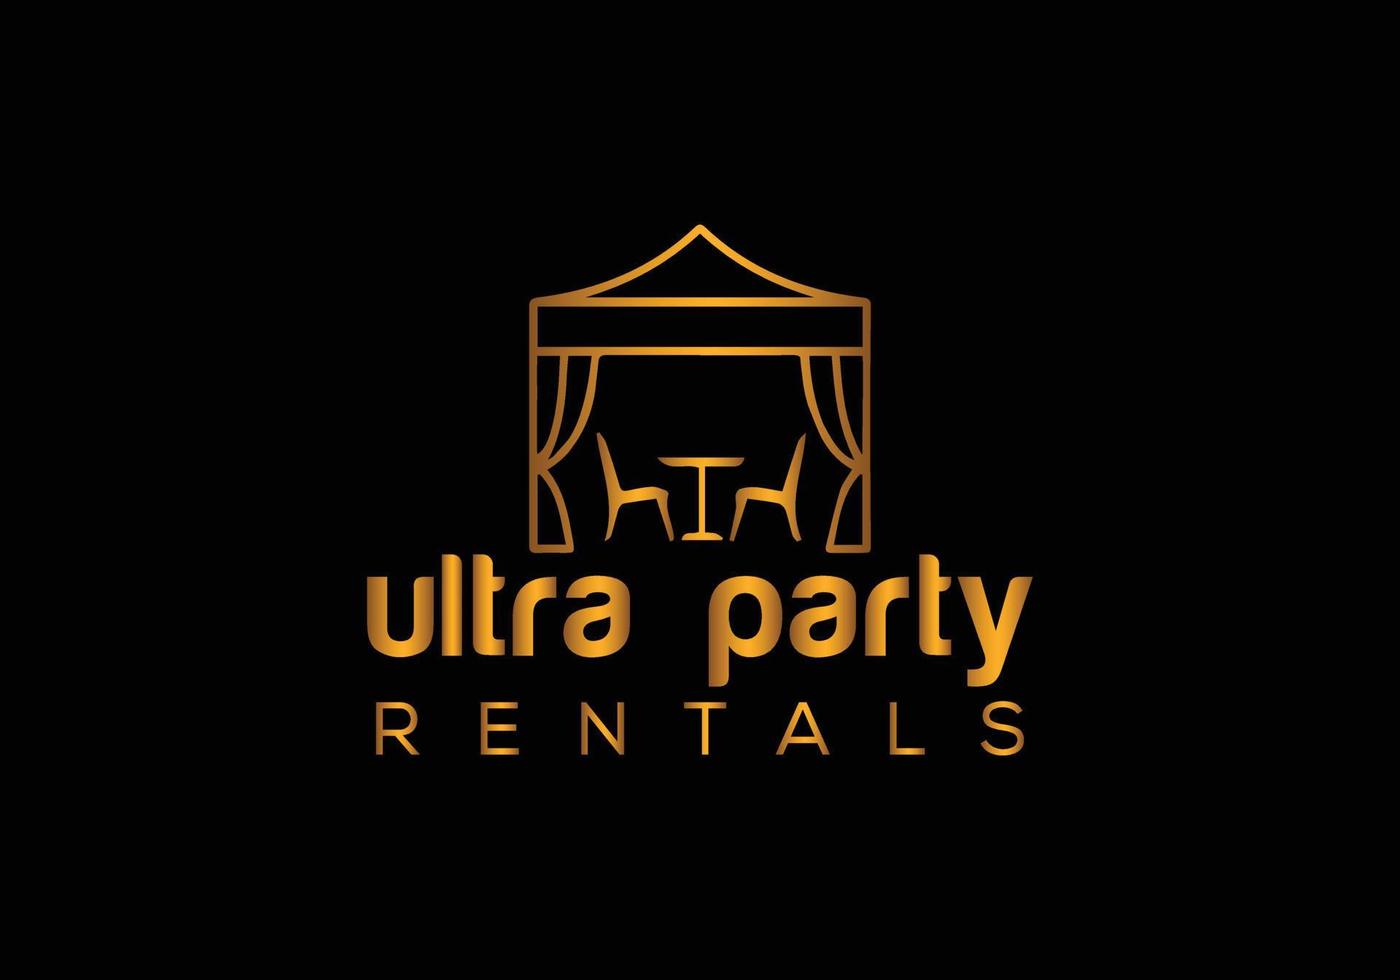 Abstract party rentals emblem logo design vector